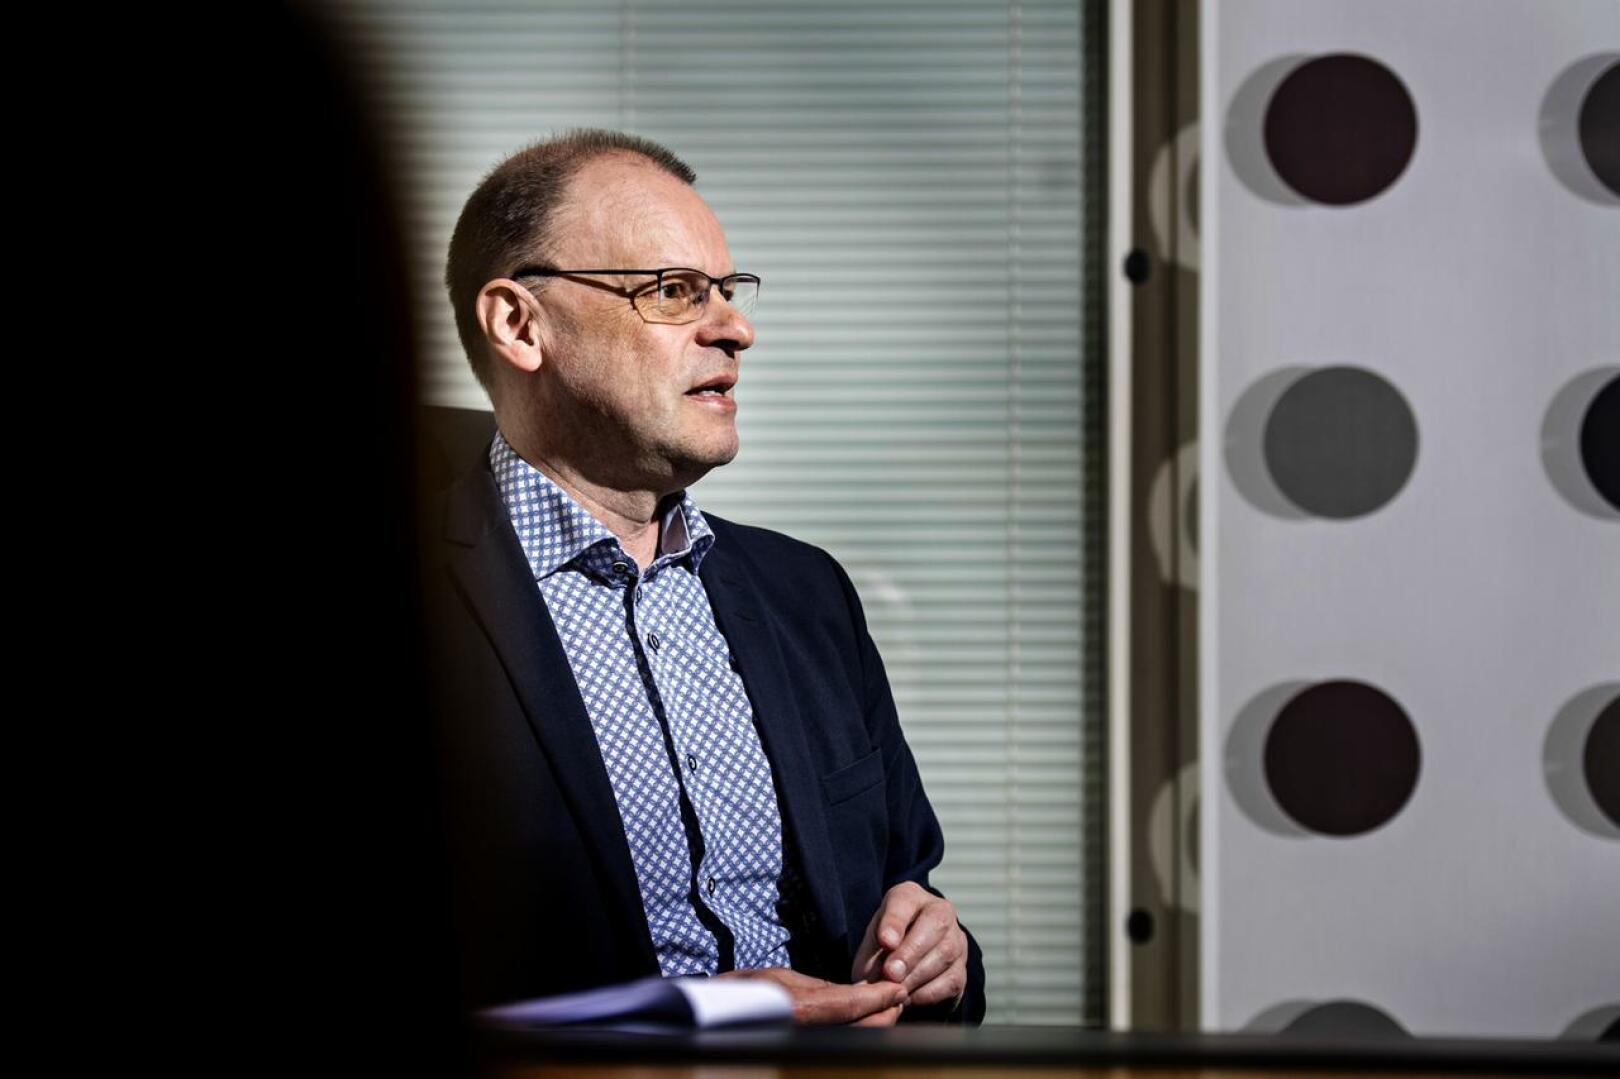 KPK Yhtiöiden toimitusjohtaja Mikko Luoman mukaan työnantajan näkökulmasta yhteistyö Soiten kanssa on toiminut erinomaisesti.